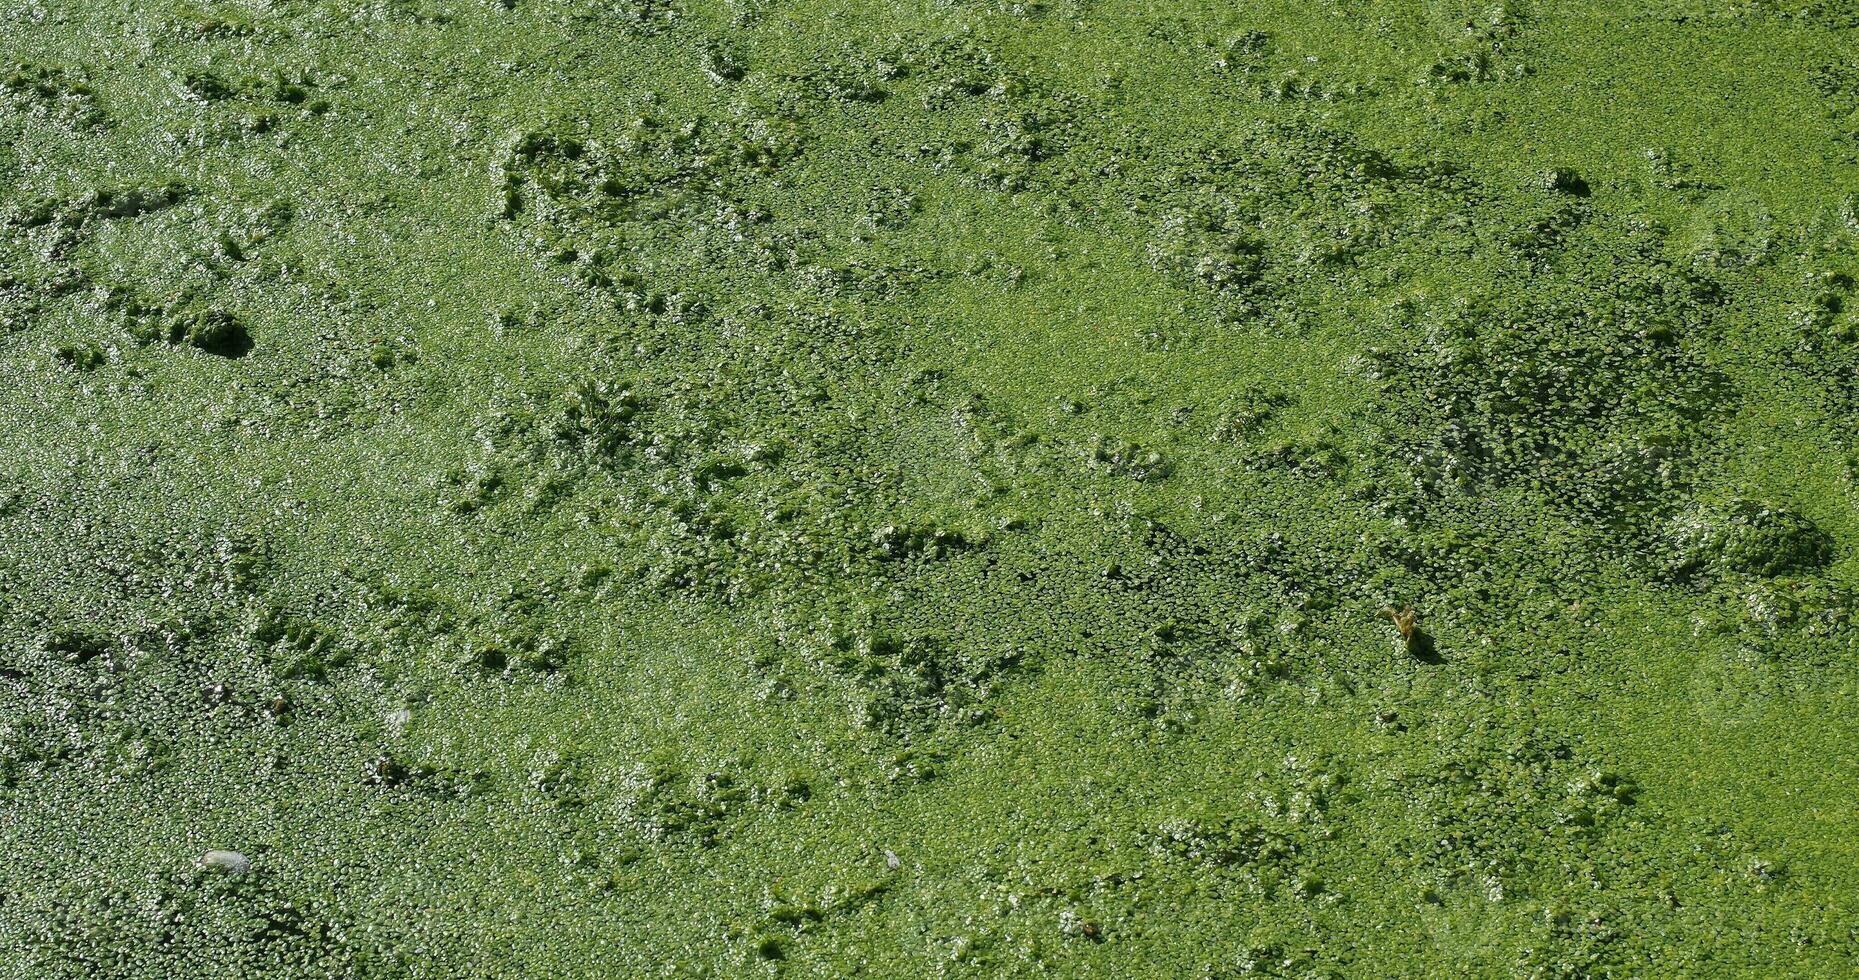 Algae floating on water photo